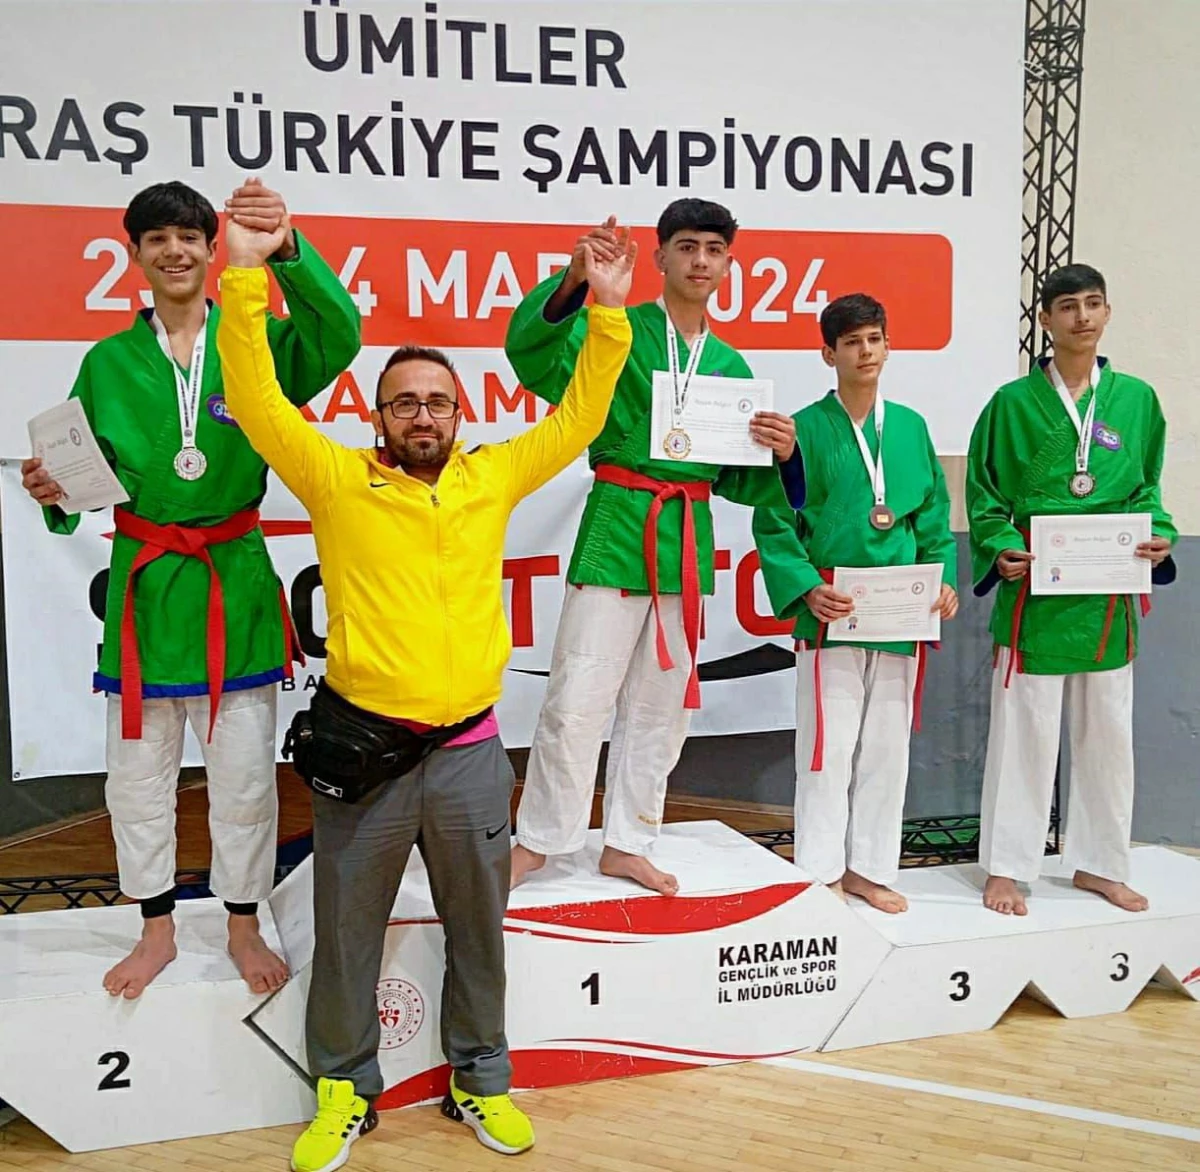 Diyarbakır Büyükşehir Belediyesi Sporcuları Ümitler Kuraş Türkiye Şampiyonasında Derece Elde Etti